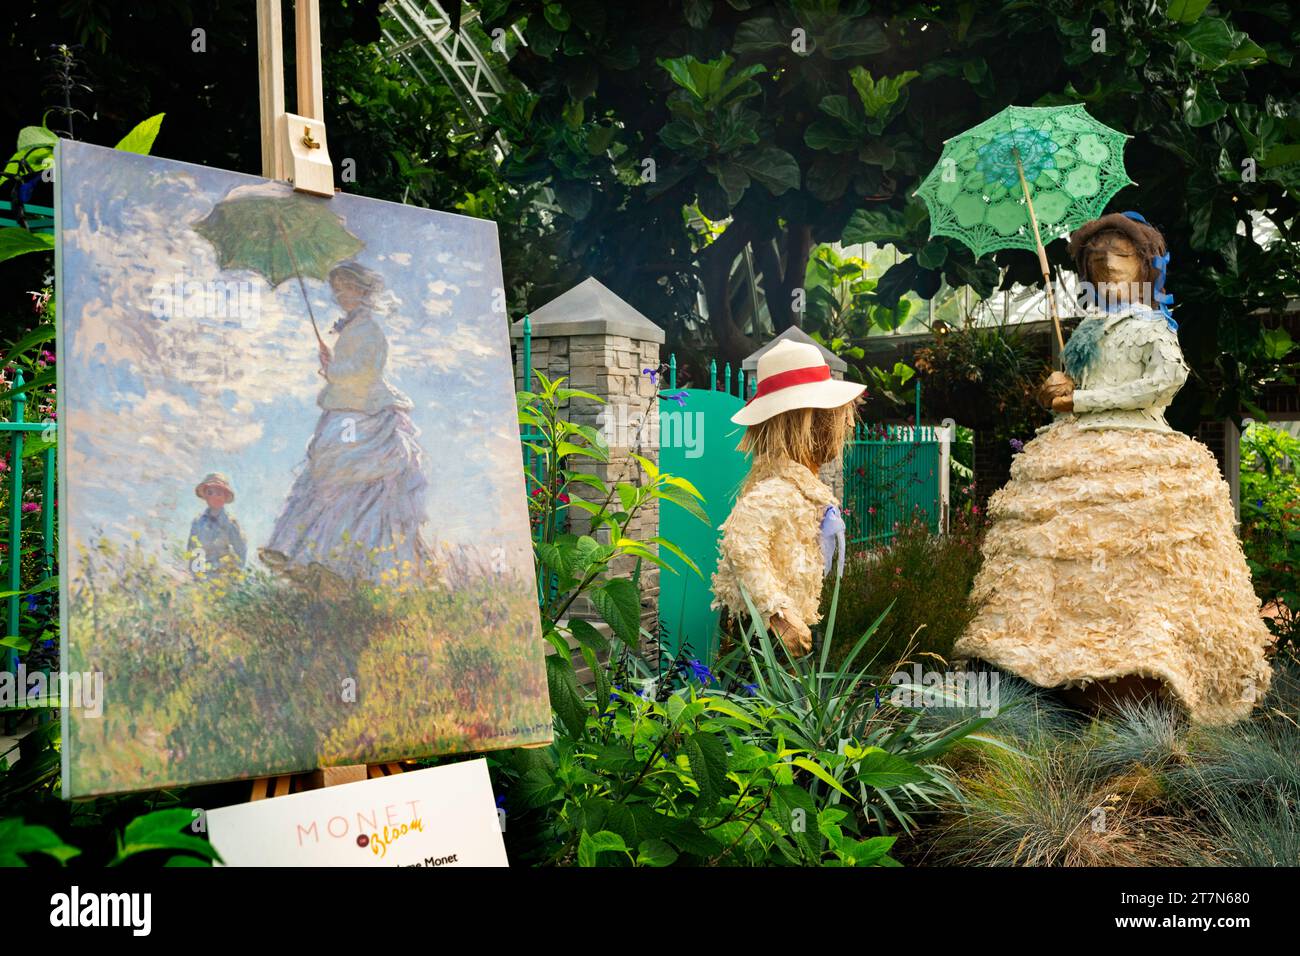 Pittsburgh, Pennsylvania, USA - Monet-Ausstellung im Phipps Botanical Garden mit Blumenfiguren, die die Szene in einem Monet-Gemälde darstellen. Stockfoto